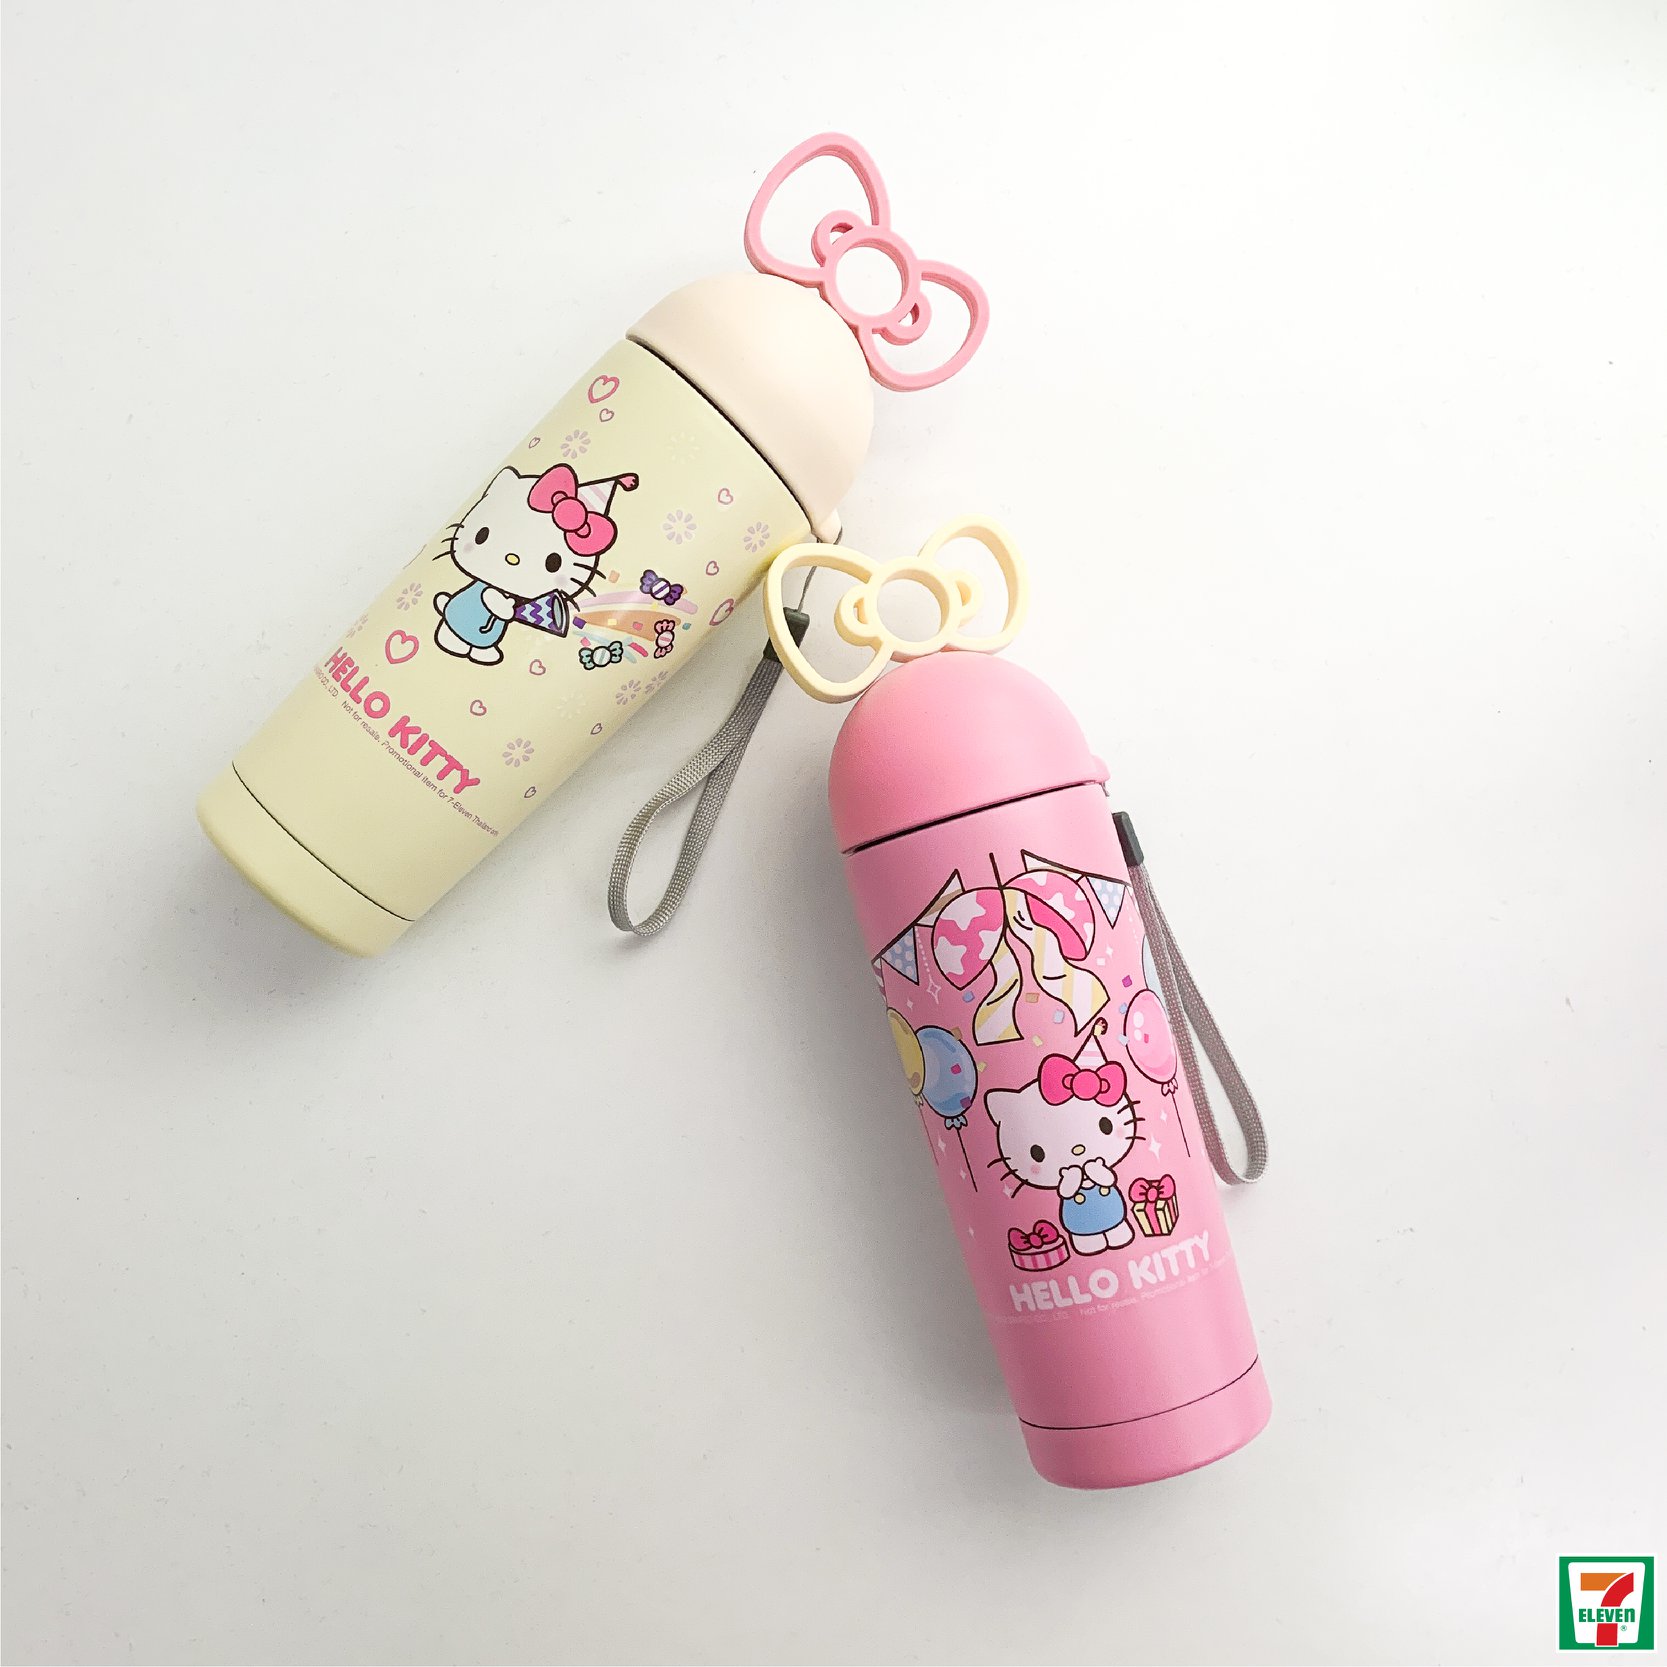 7-Eleven Thailand Hello Kitty Flasks